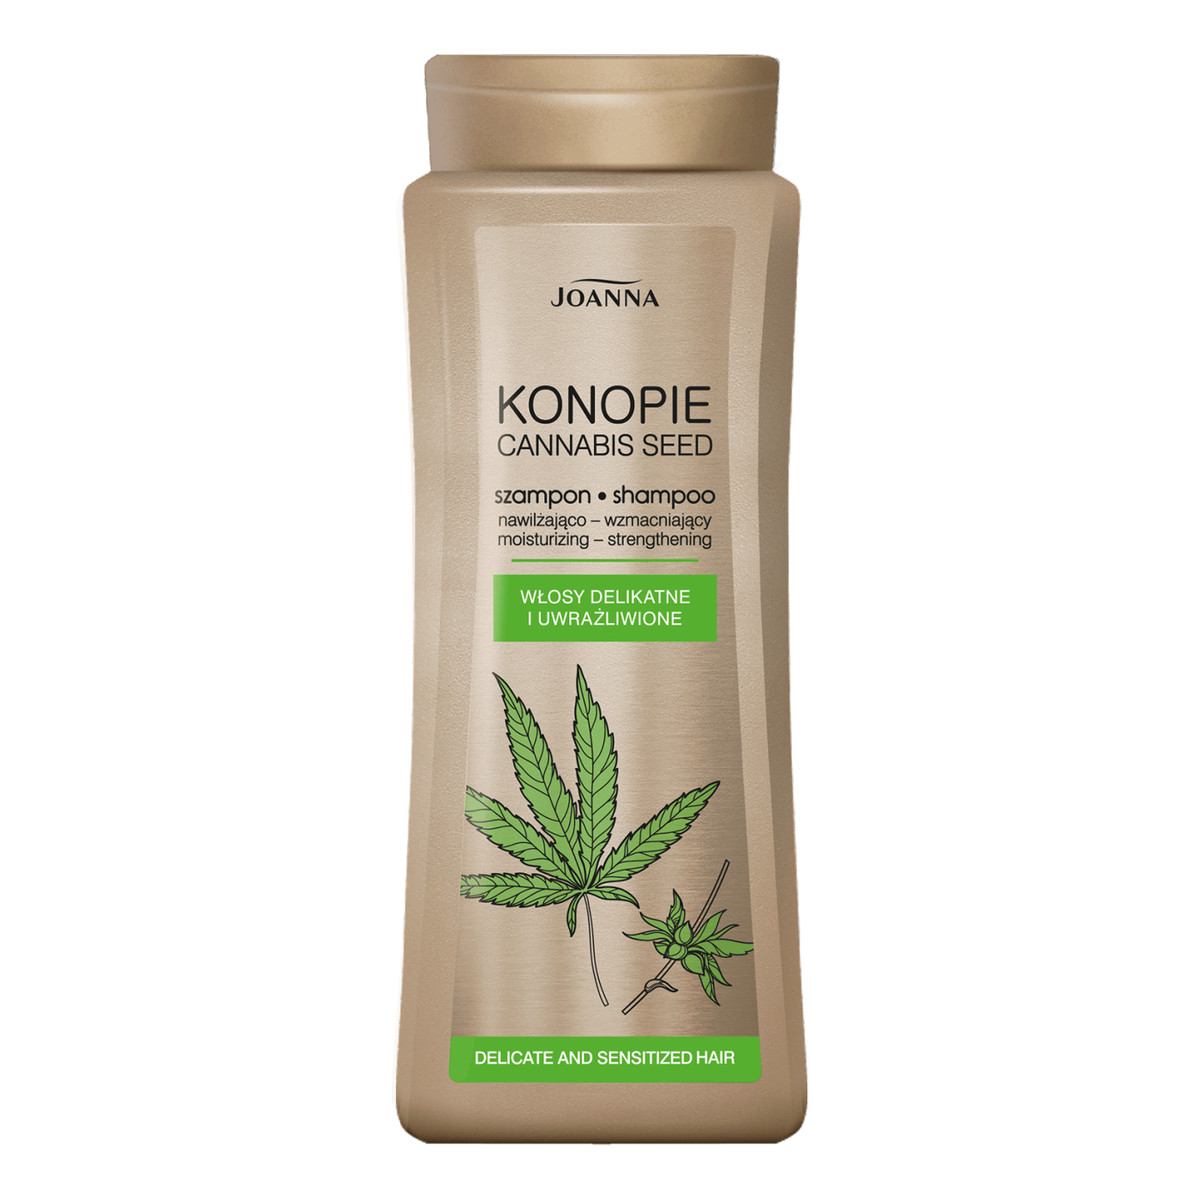 Joanna Konopie nawilżająco-wzmacniający szampon do włosów delikatnych i uwrażliwionych 200ml